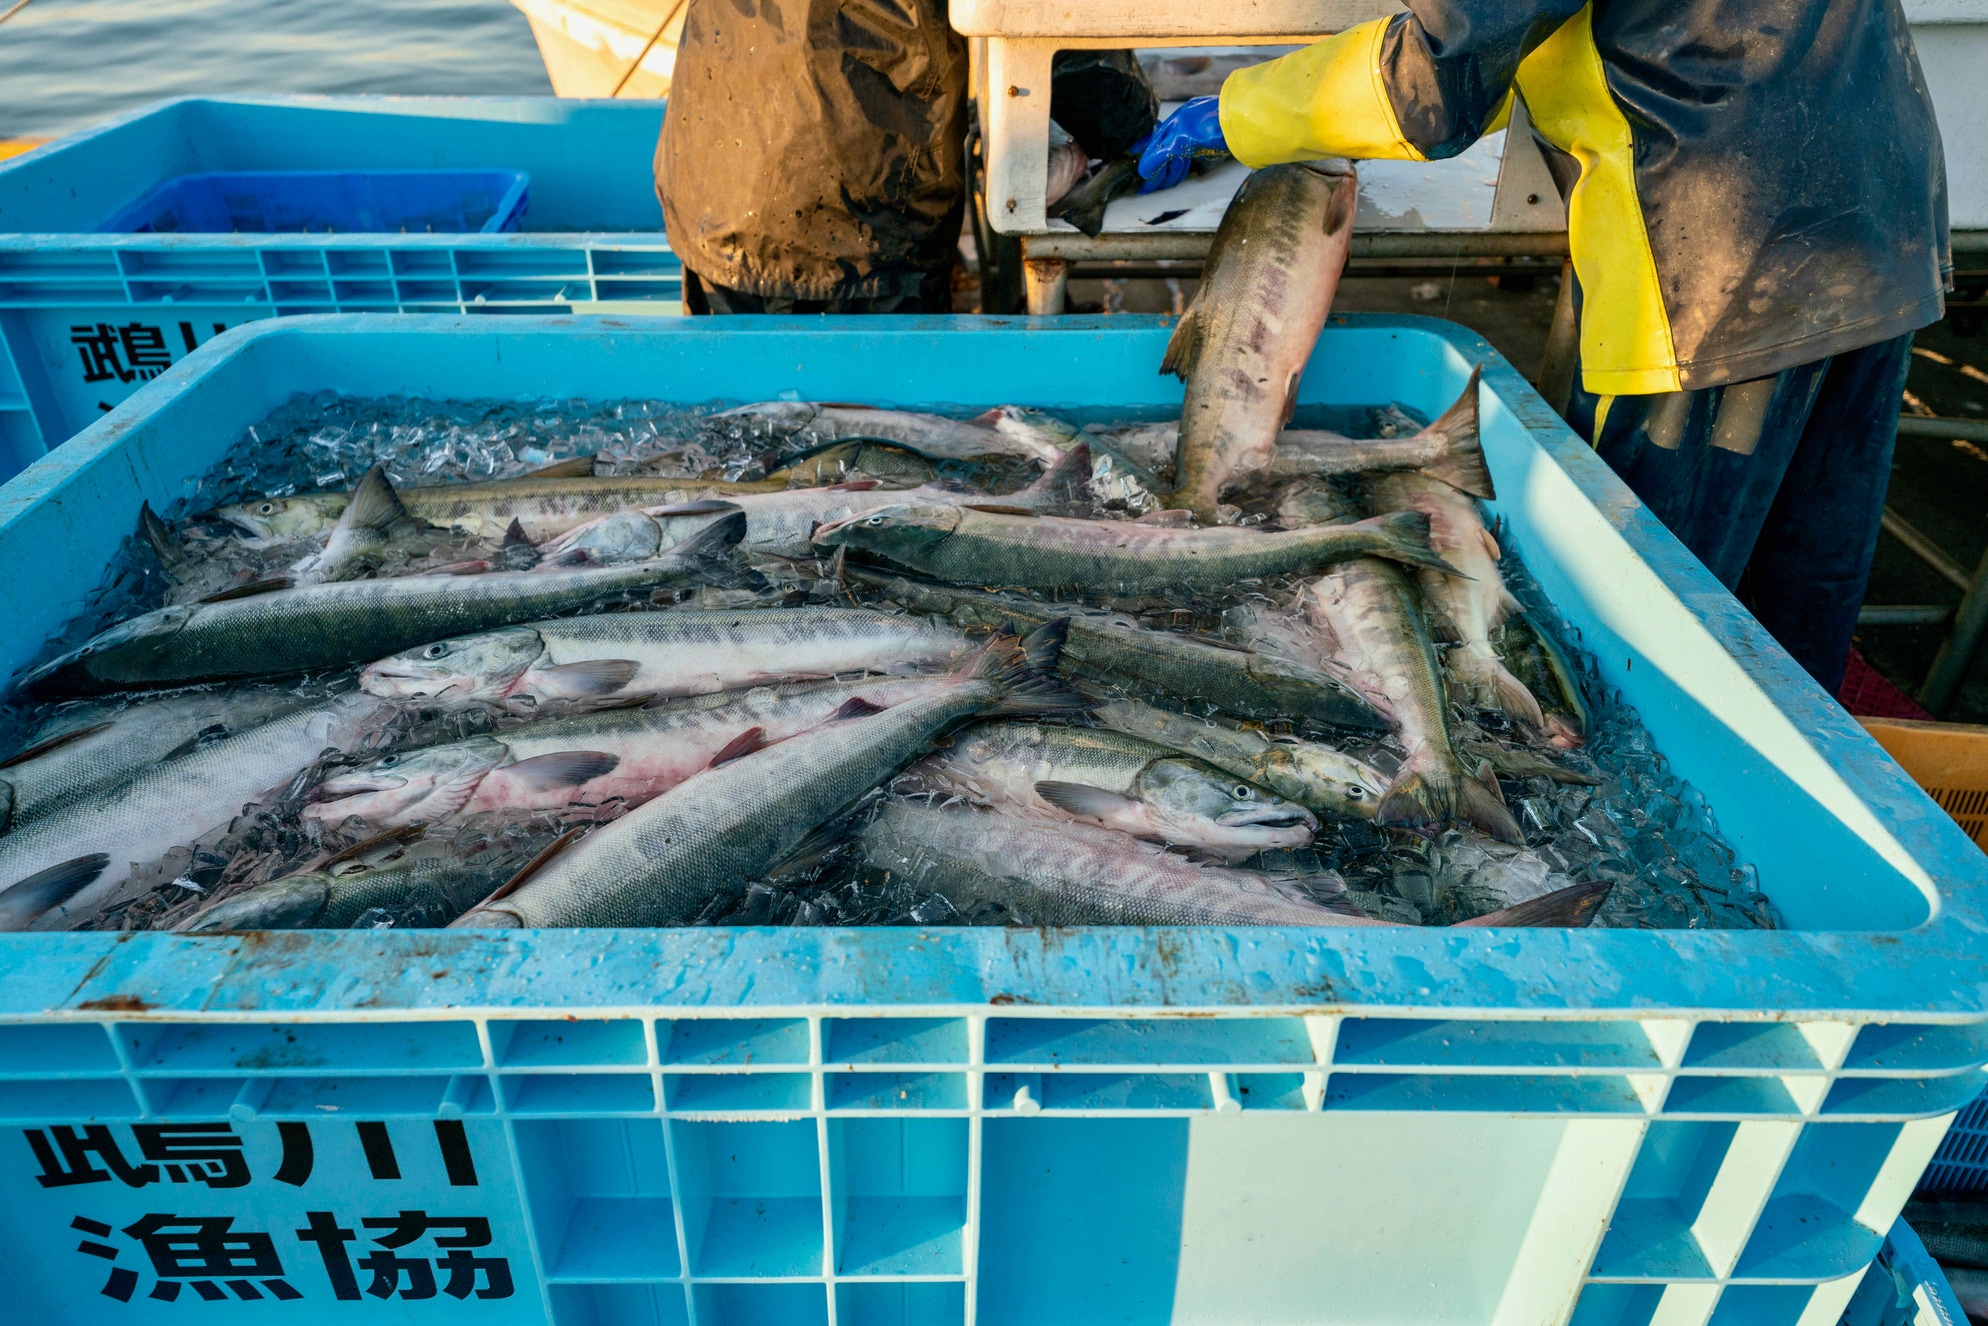 水揚げされたばかりの北海道産秋鮭,氷を張った海水に大量の鮭,鵡川漁港で仕分けされる秋鮭